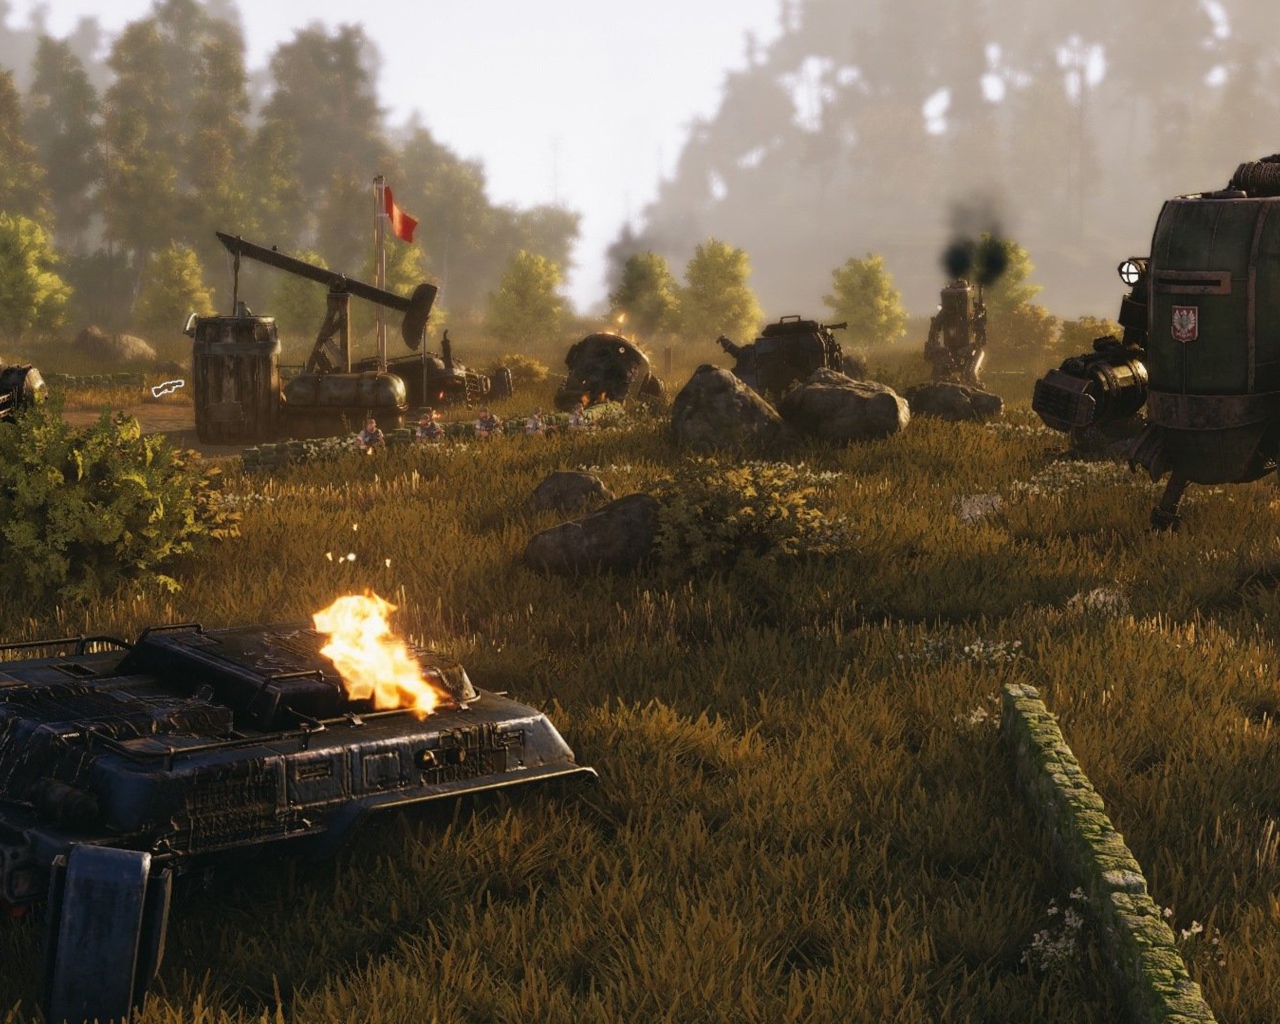 Скриншот видеоигры игры Iron Harvest, 2019 года